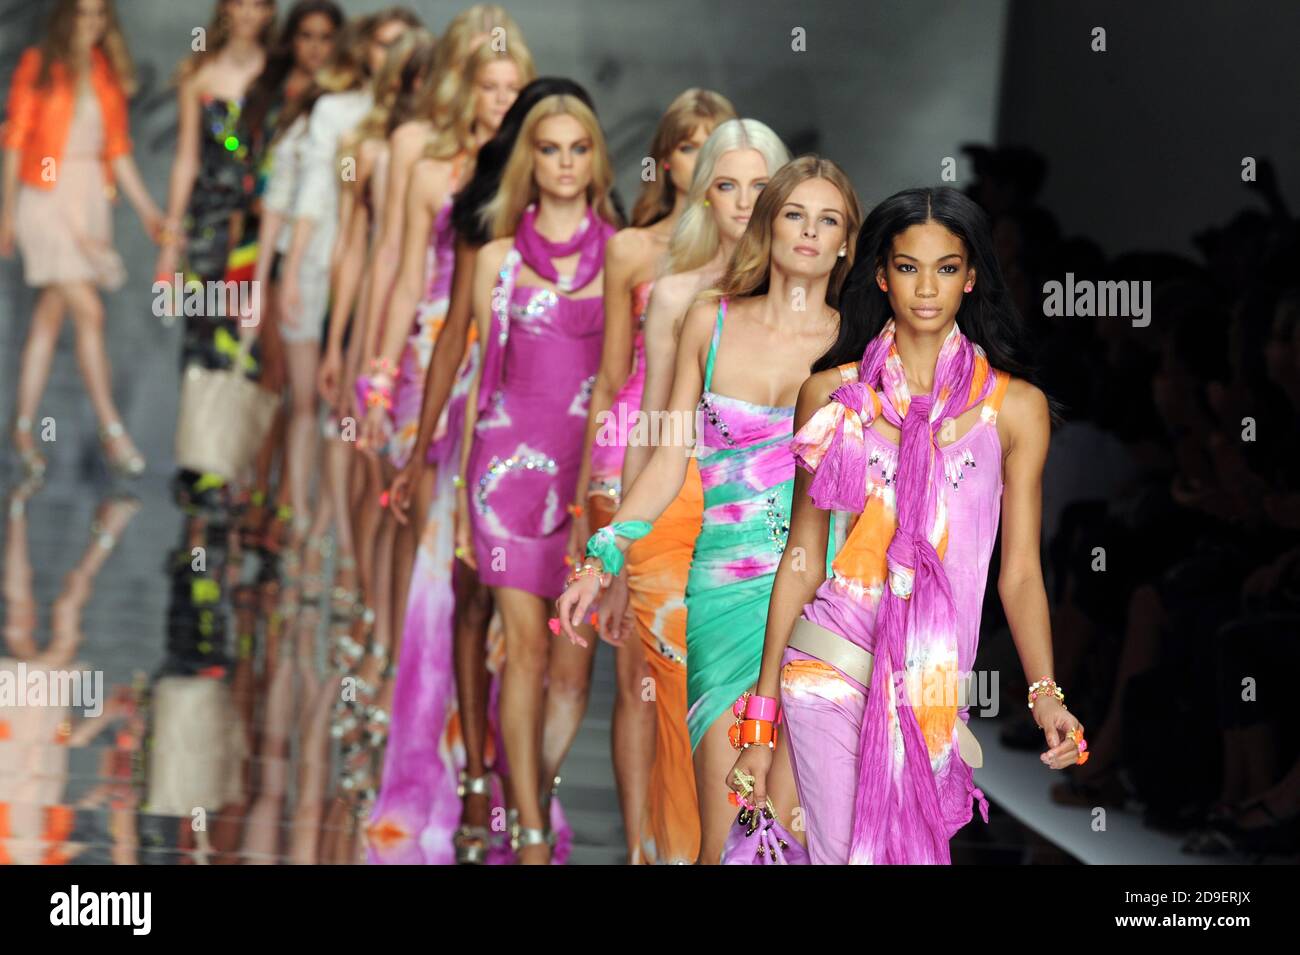 Models catwalk at the Milano fashion week. Stock Photo